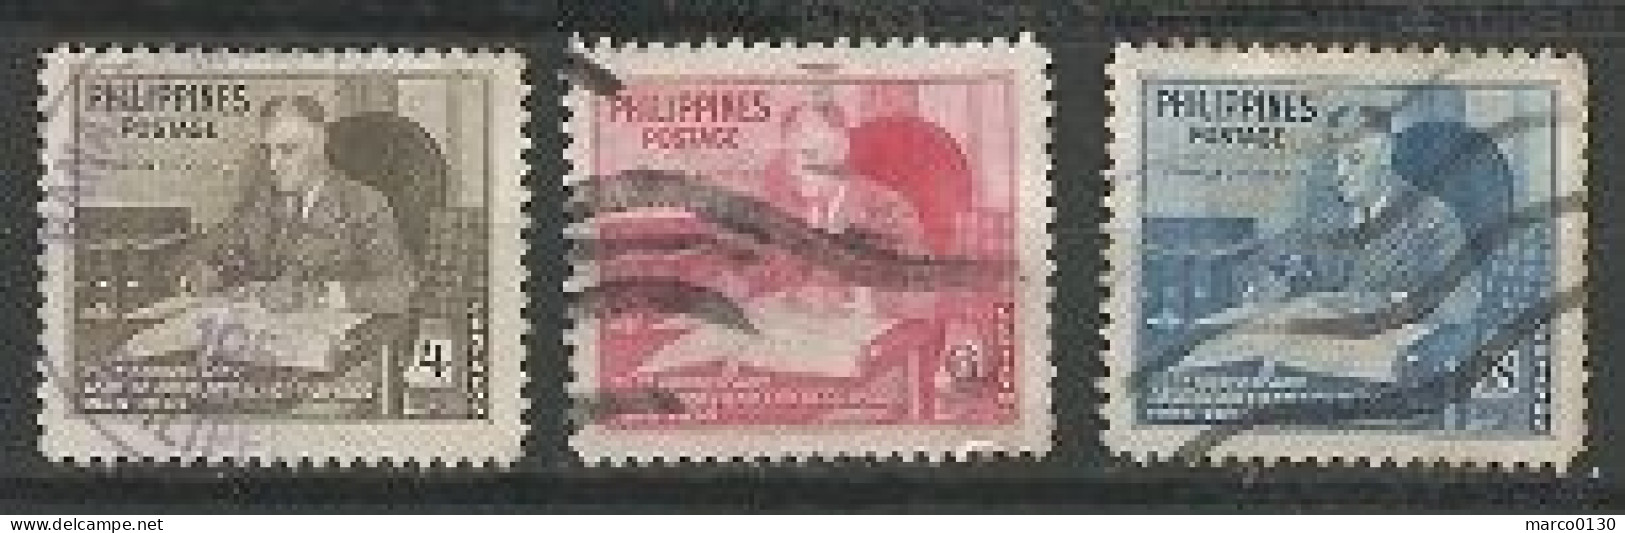 PHILIPPINES N° 363 + N° 364 + N° 365 OBLITERE - Philippines